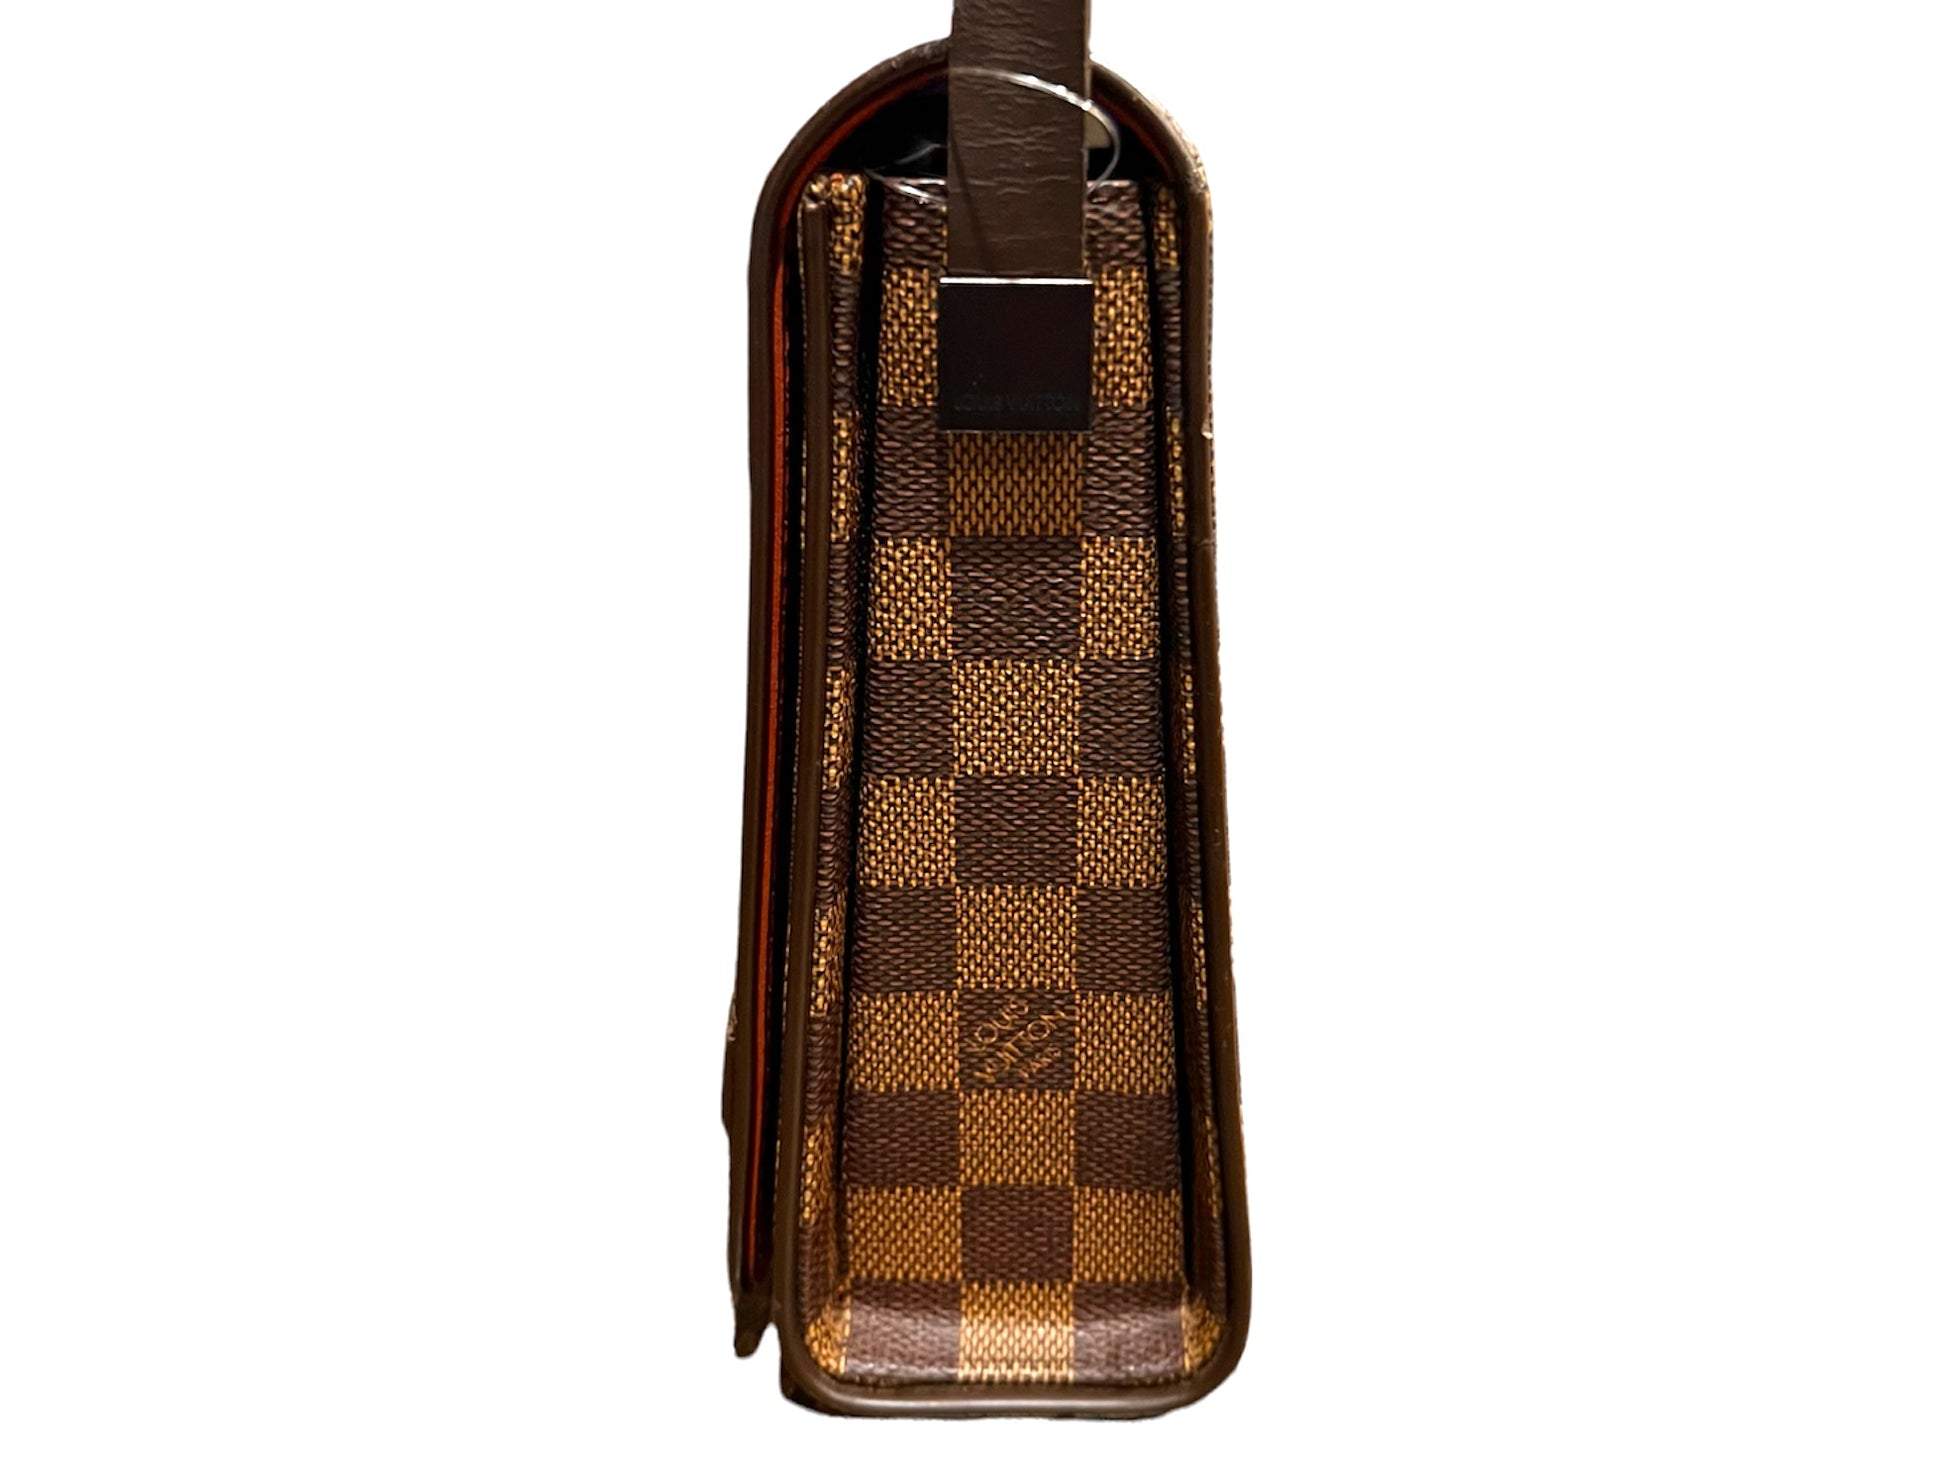 Louis Vuitton Tribeca Carre Handbag Damier - ShopStyle Shoulder Bags